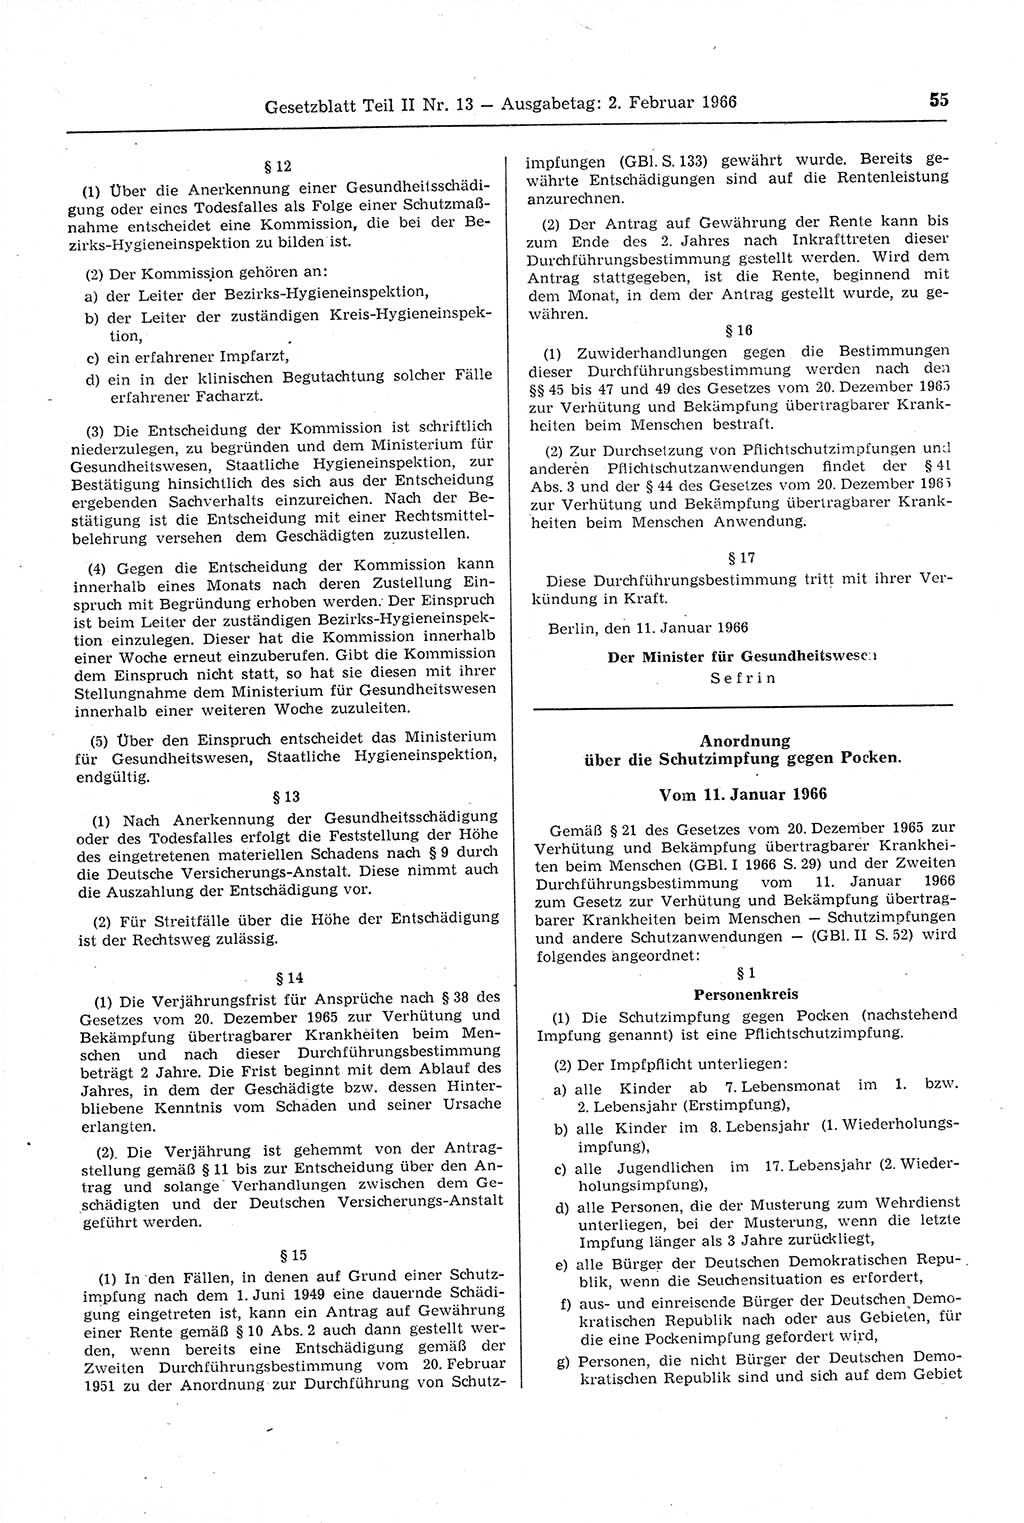 Gesetzblatt (GBl.) der Deutschen Demokratischen Republik (DDR) Teil ⅠⅠ 1966, Seite 55 (GBl. DDR ⅠⅠ 1966, S. 55)